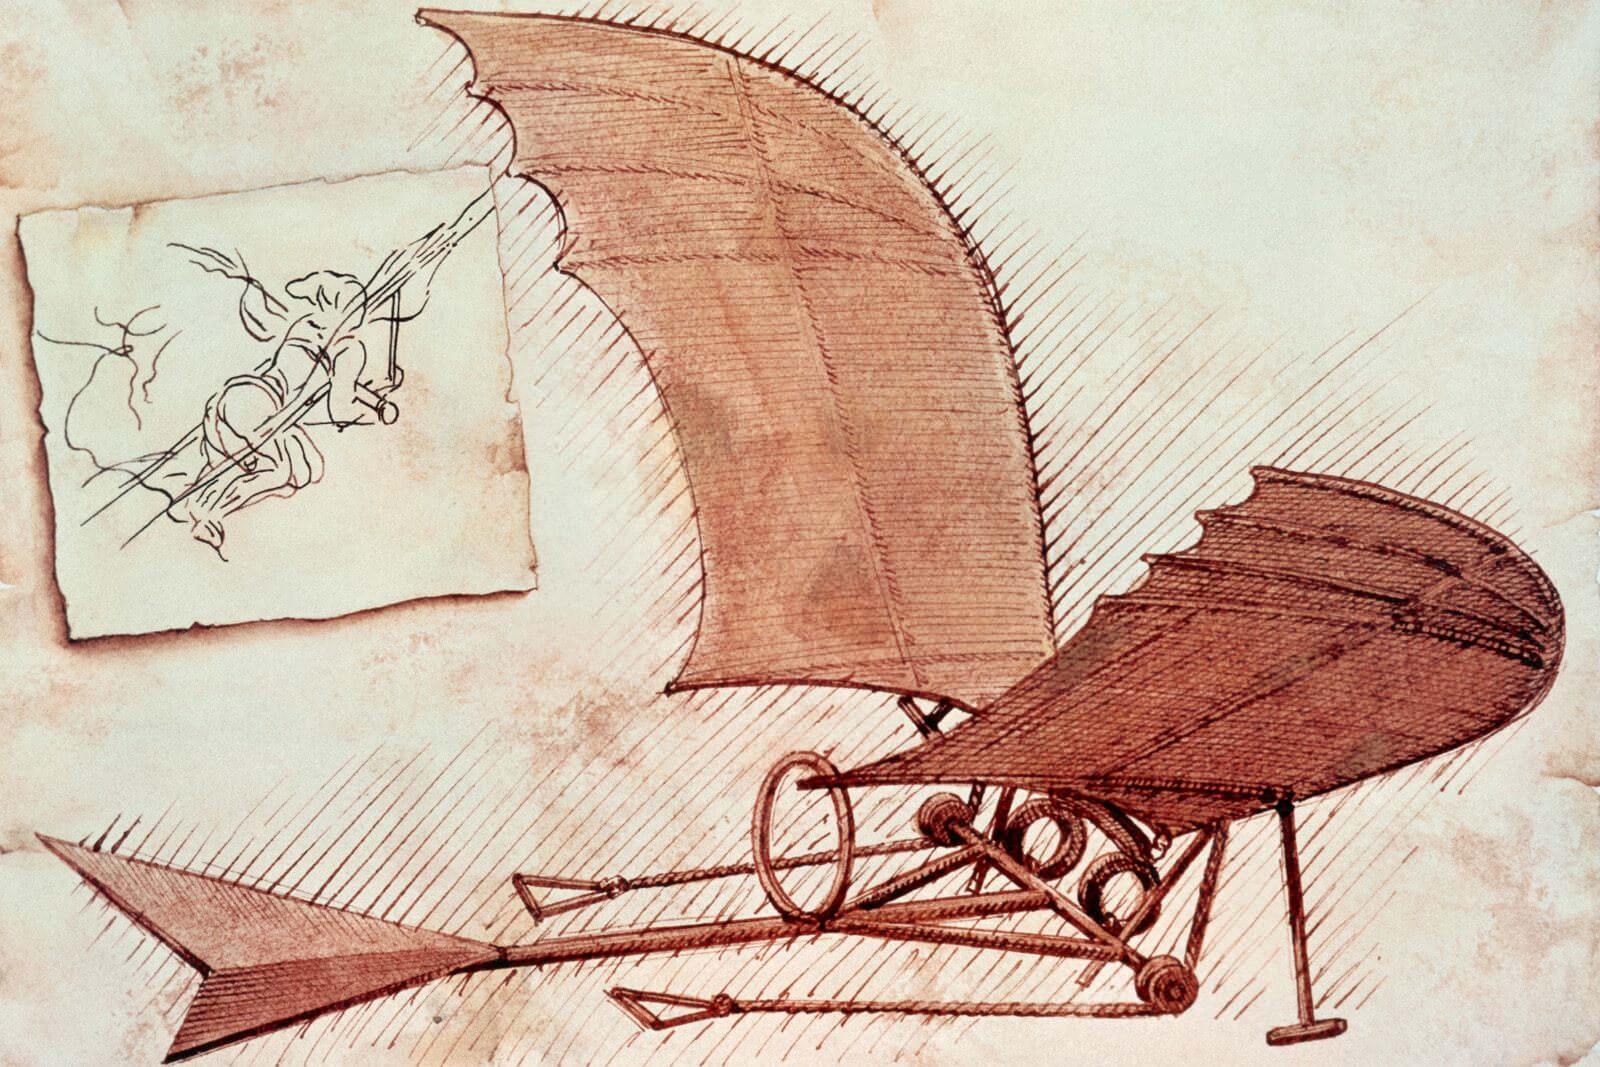 Leonardo's dream of flying